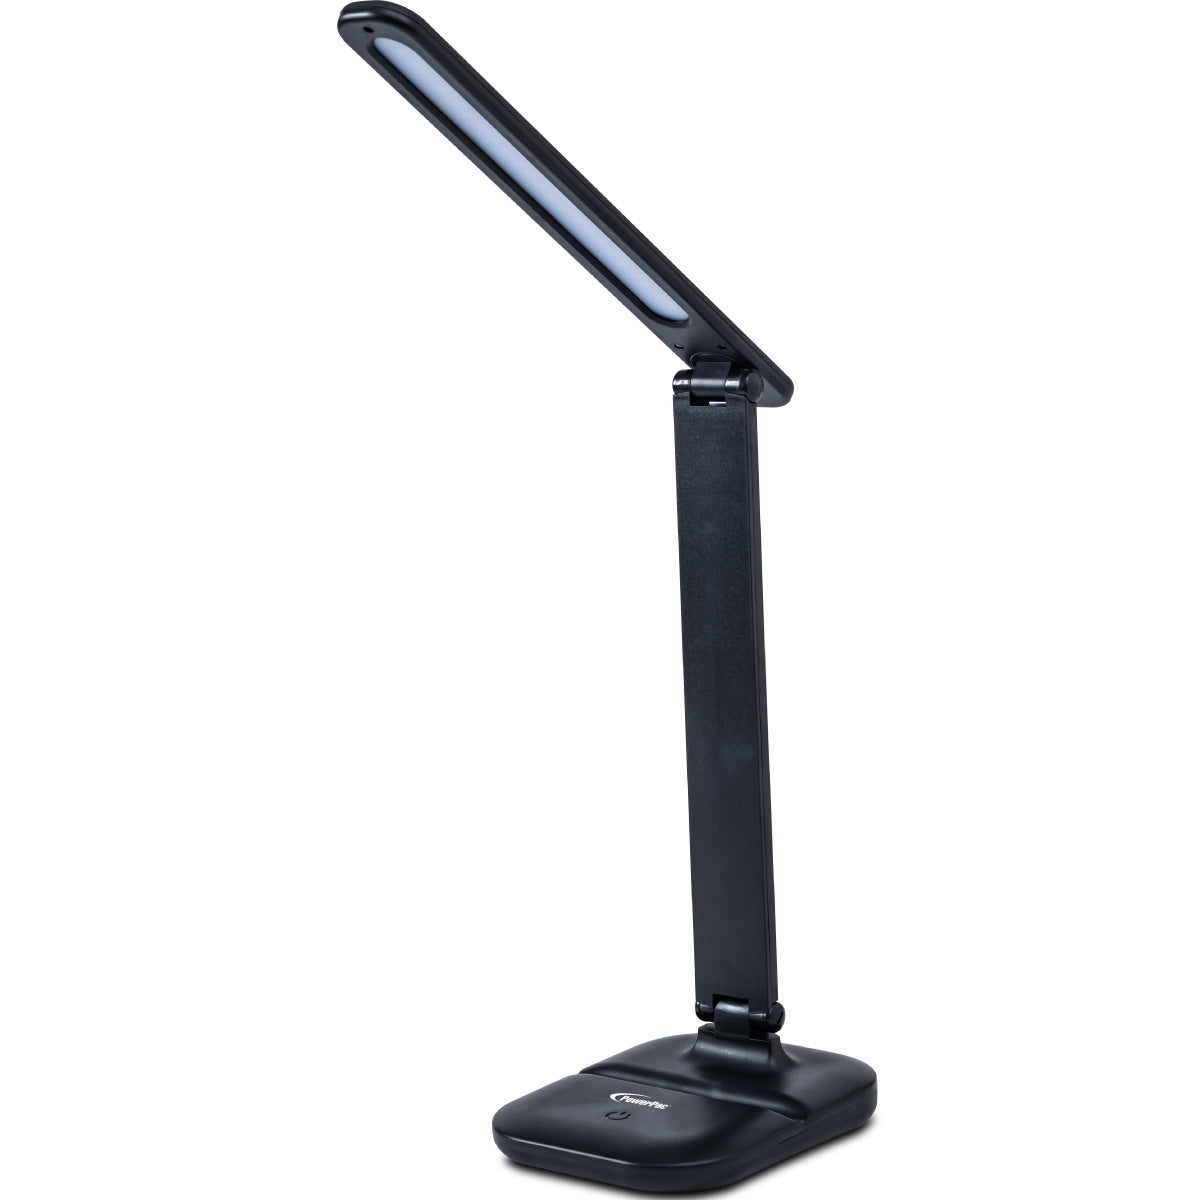 USB LED Desk Lamp, children learning Table Lamp (PP1302)